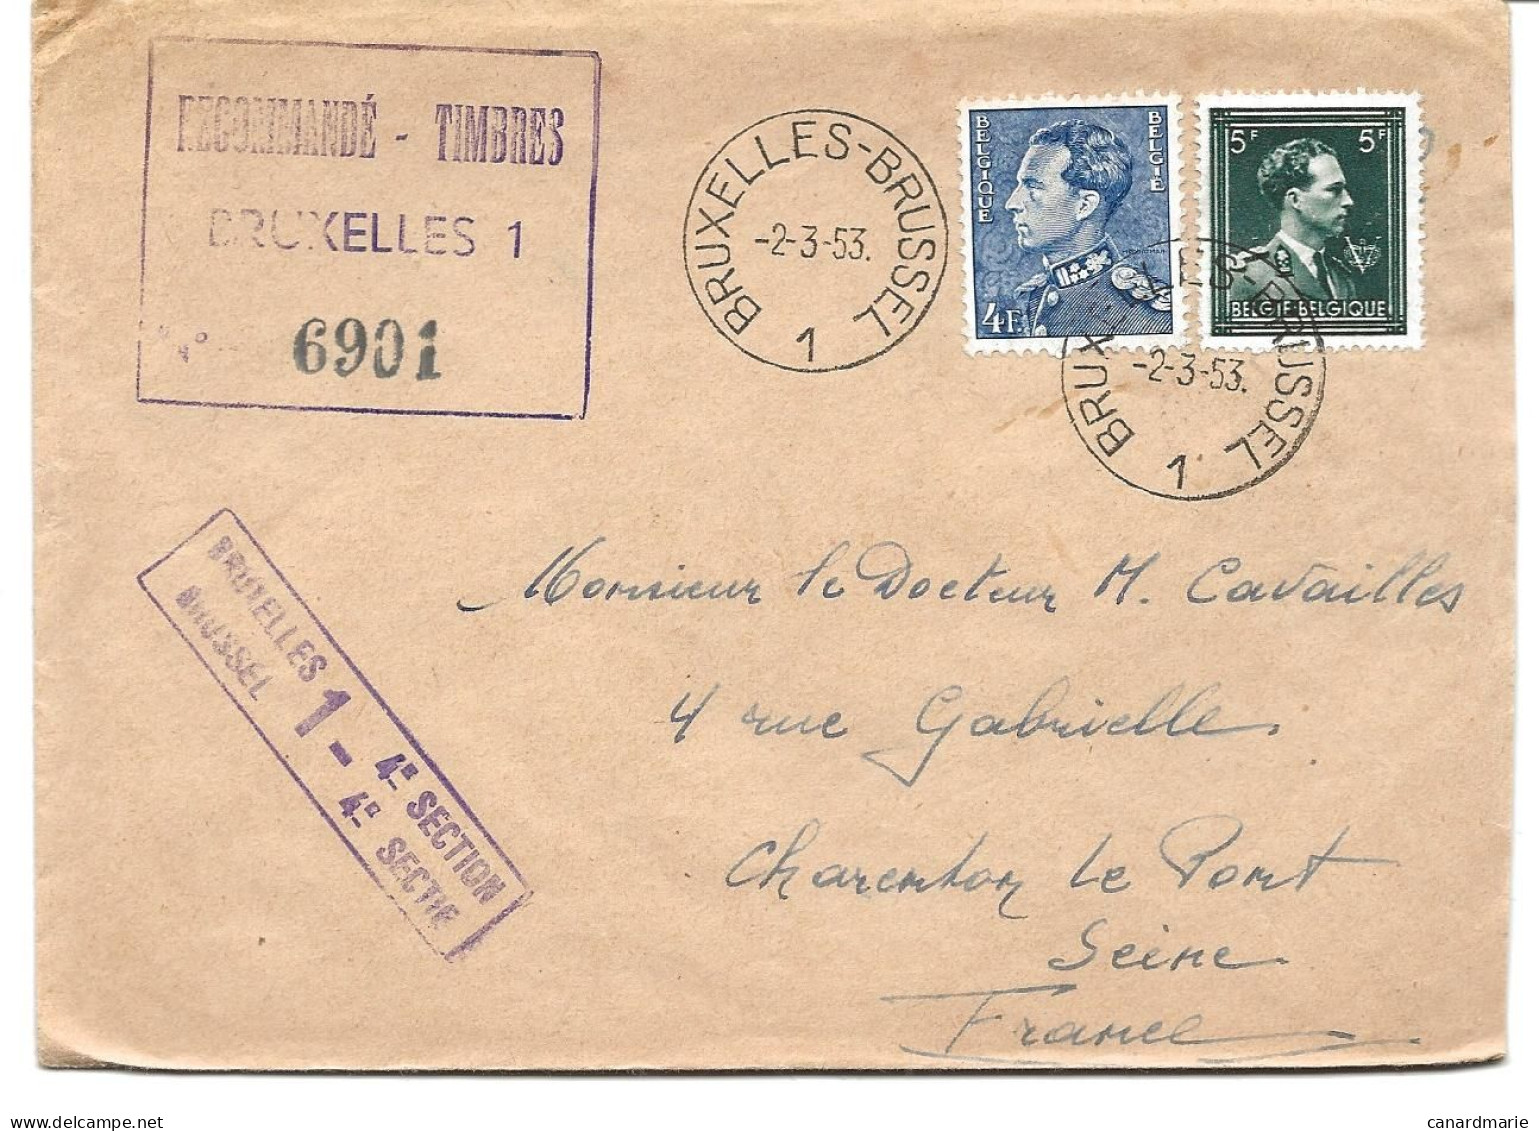 2 LETTRES POUR LA FRANCE 1953/55 AVEC CACHETS RECOMMANDE-TIMBRES BRUXELLES 1 - 4° SECTION - Lettres & Documents